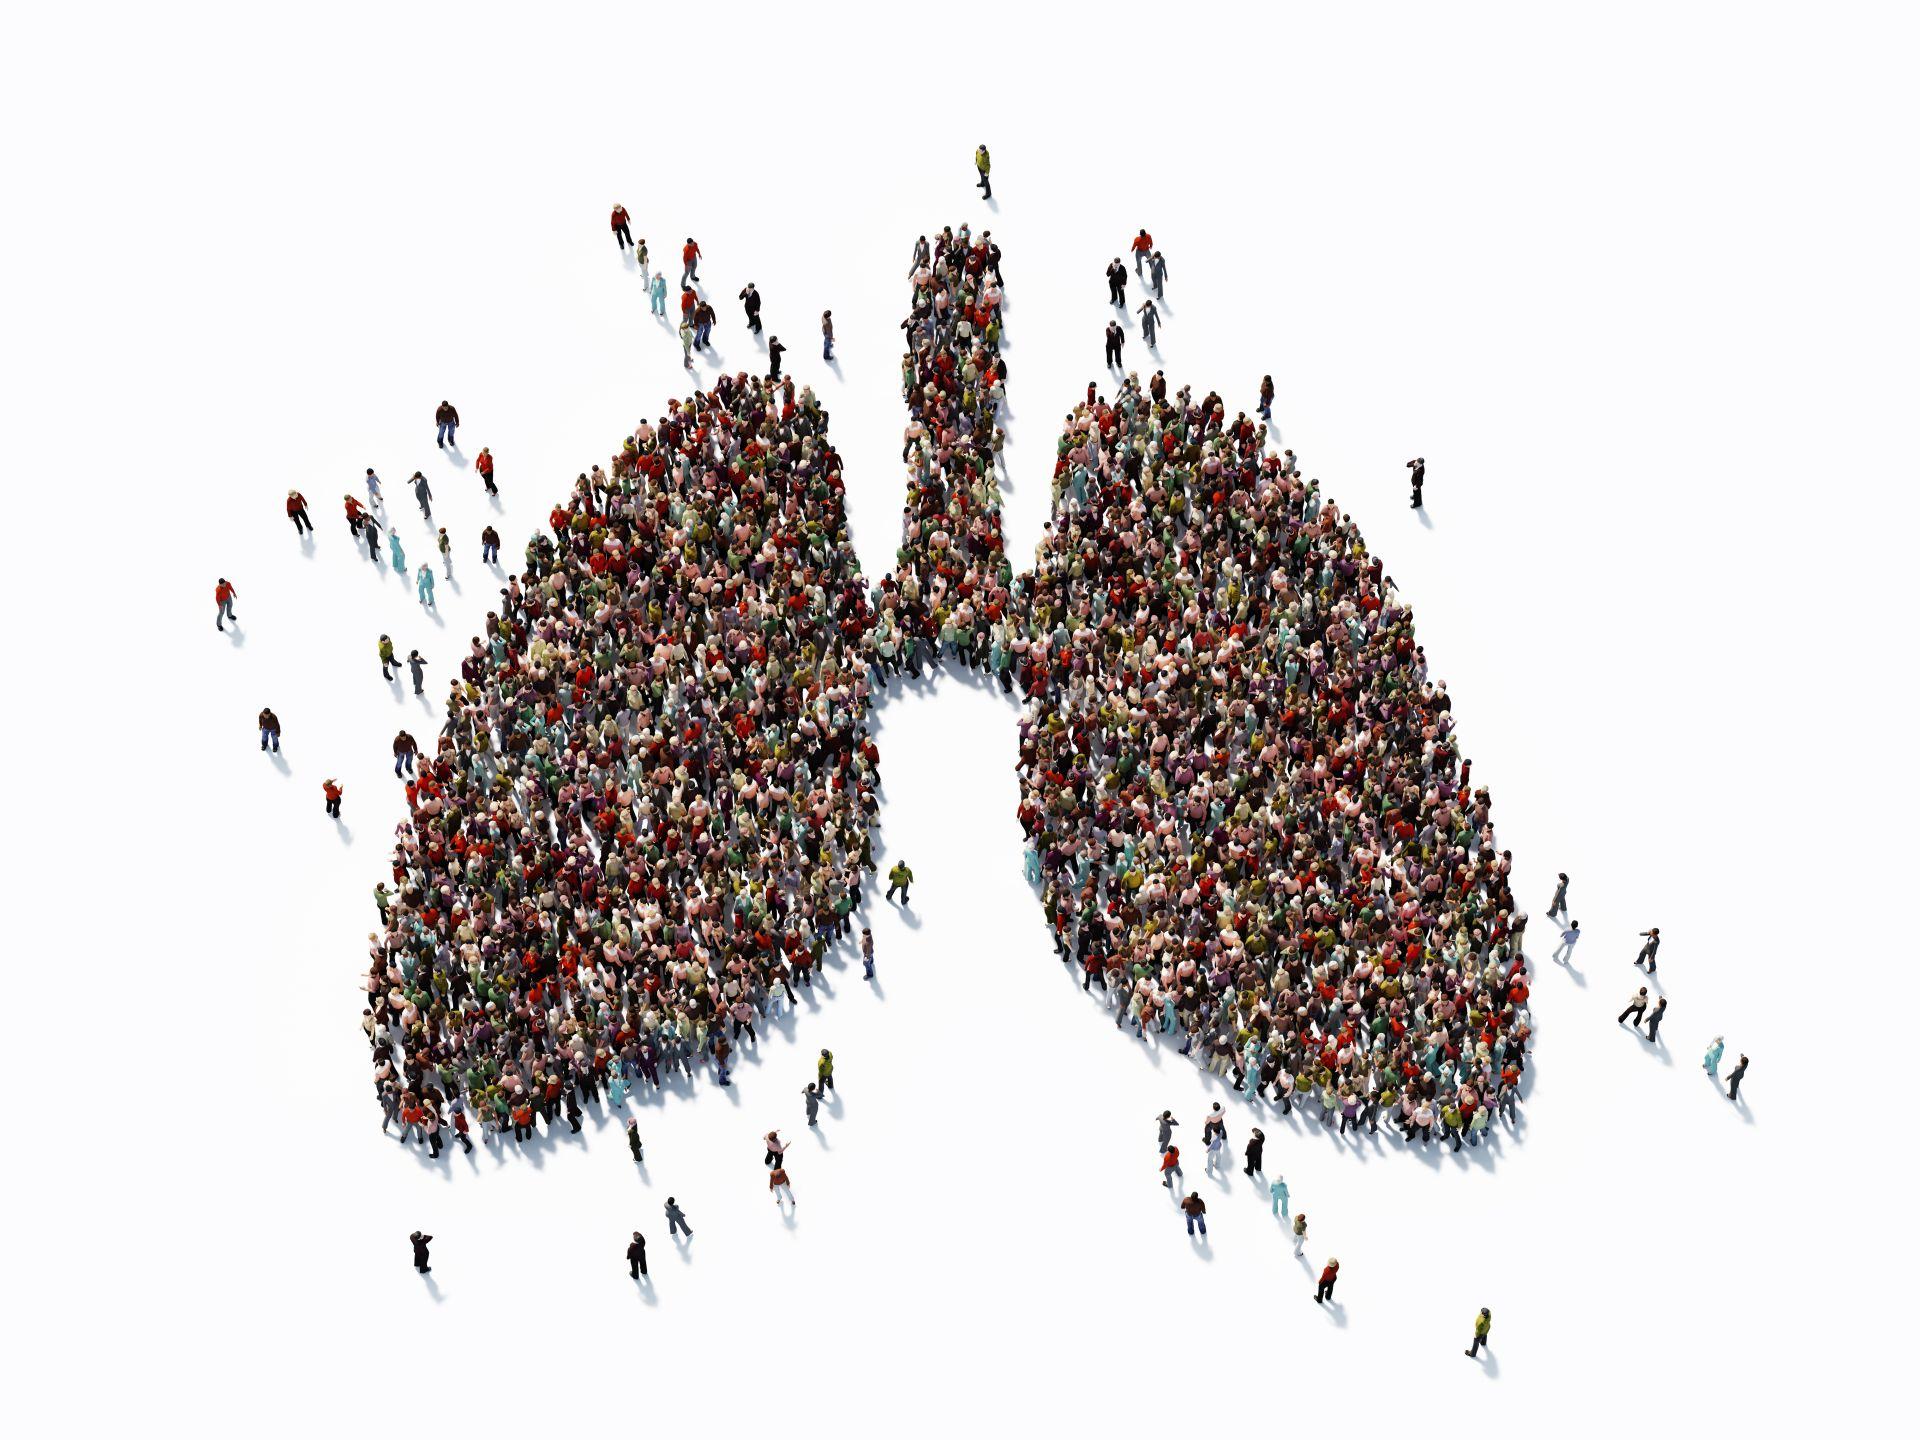 Menschliche Menge, die ein großes Lungensymbol bildet